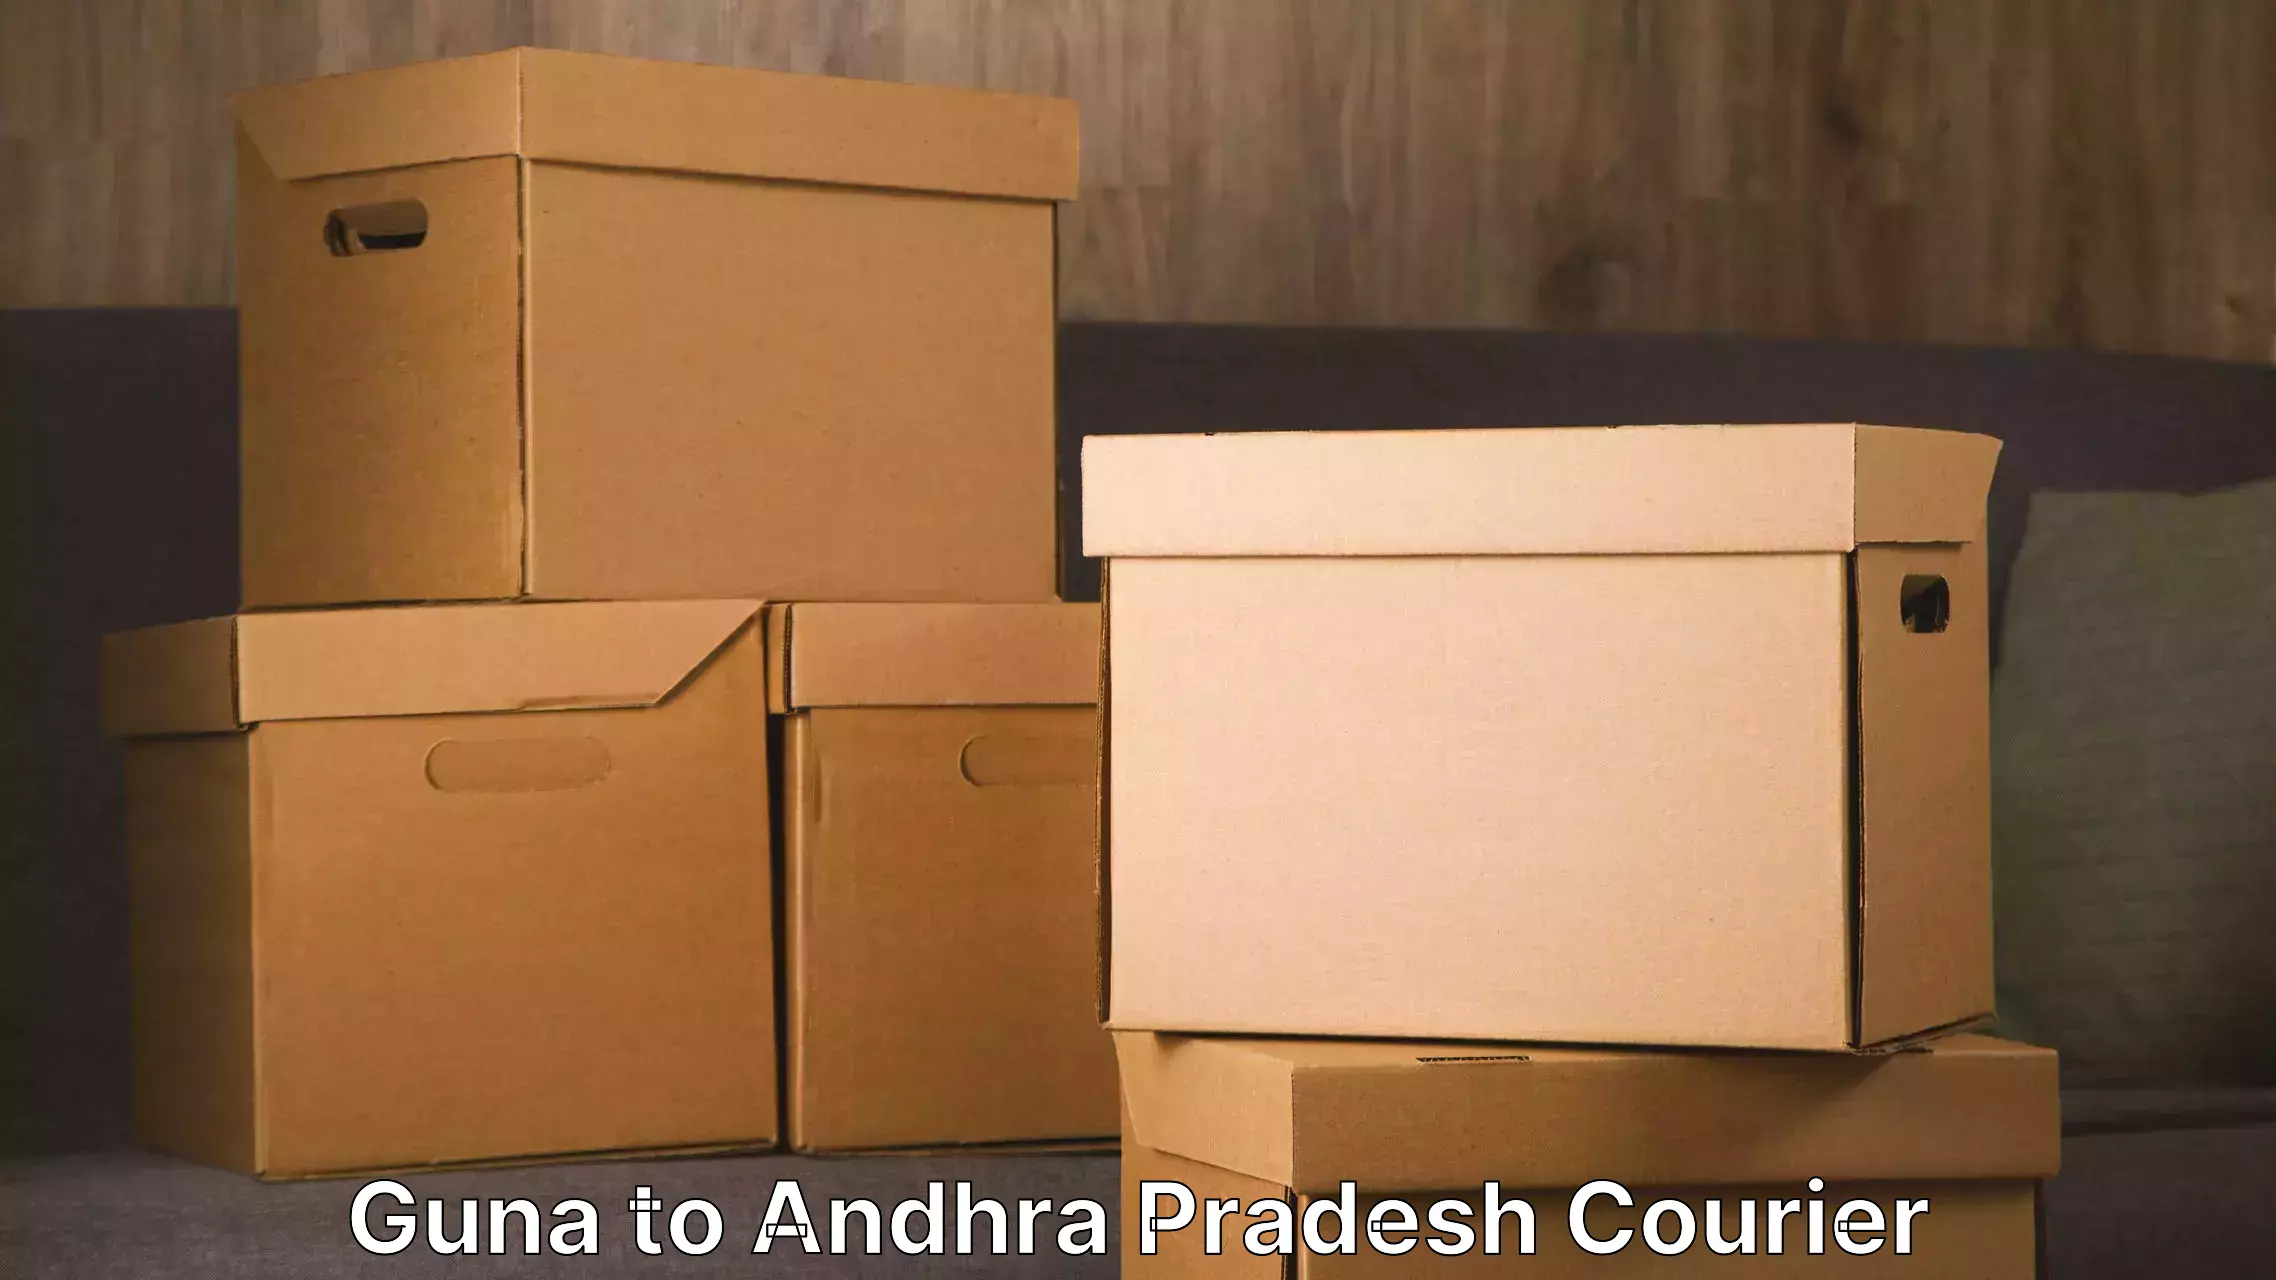 Expert goods movers Guna to Vidyanagar Nellore